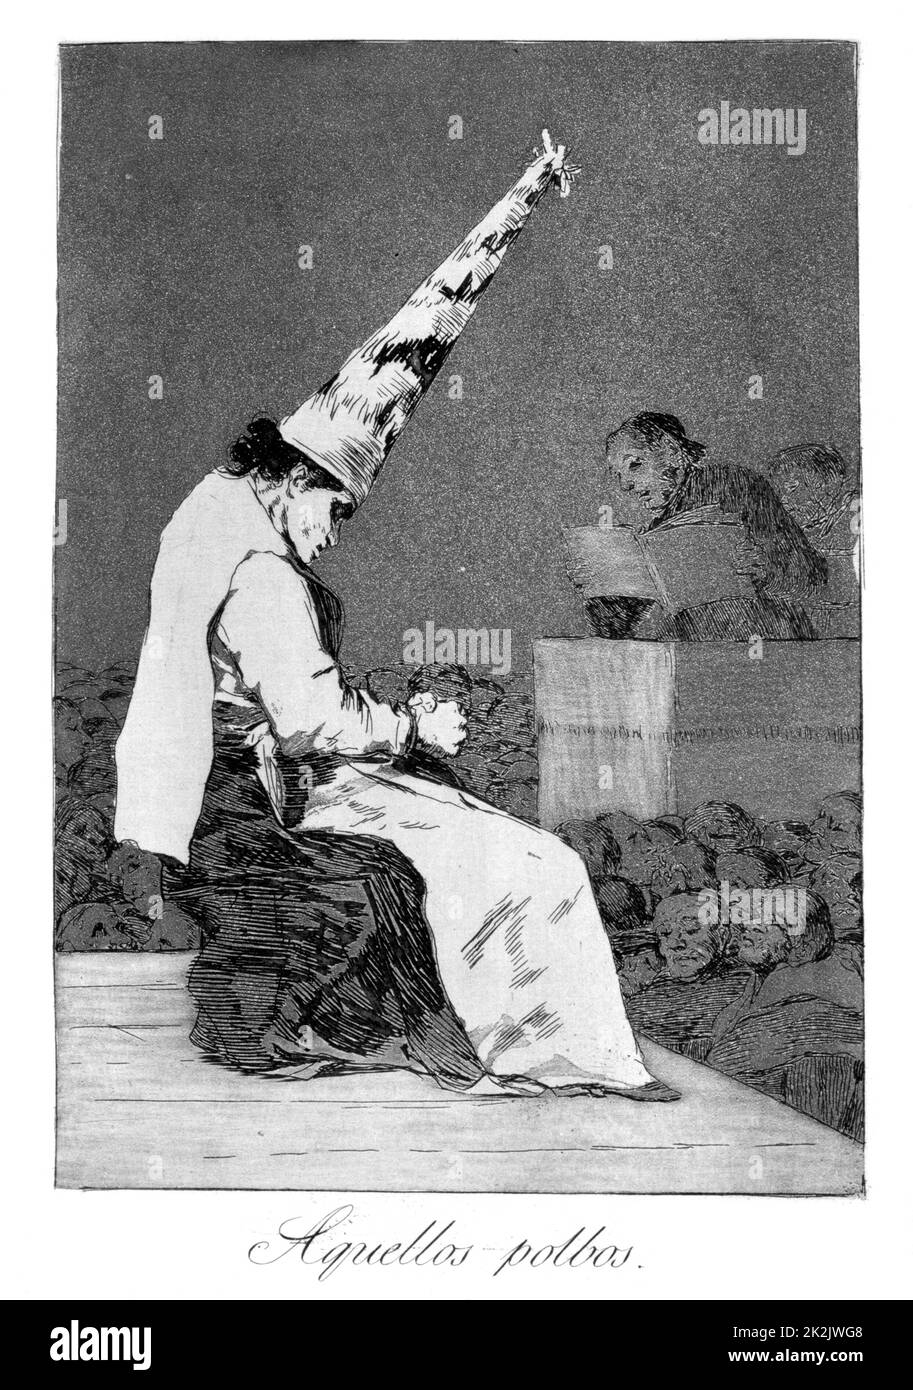 Quei pezzi di polvere, Perrico il pappettino', 1799. Perrico catturato dando pozioni d'amore agli amanti, piatto 23 di 'Los caprichos'. Di Francisco Jose de Lucientes y Goya Foto Stock